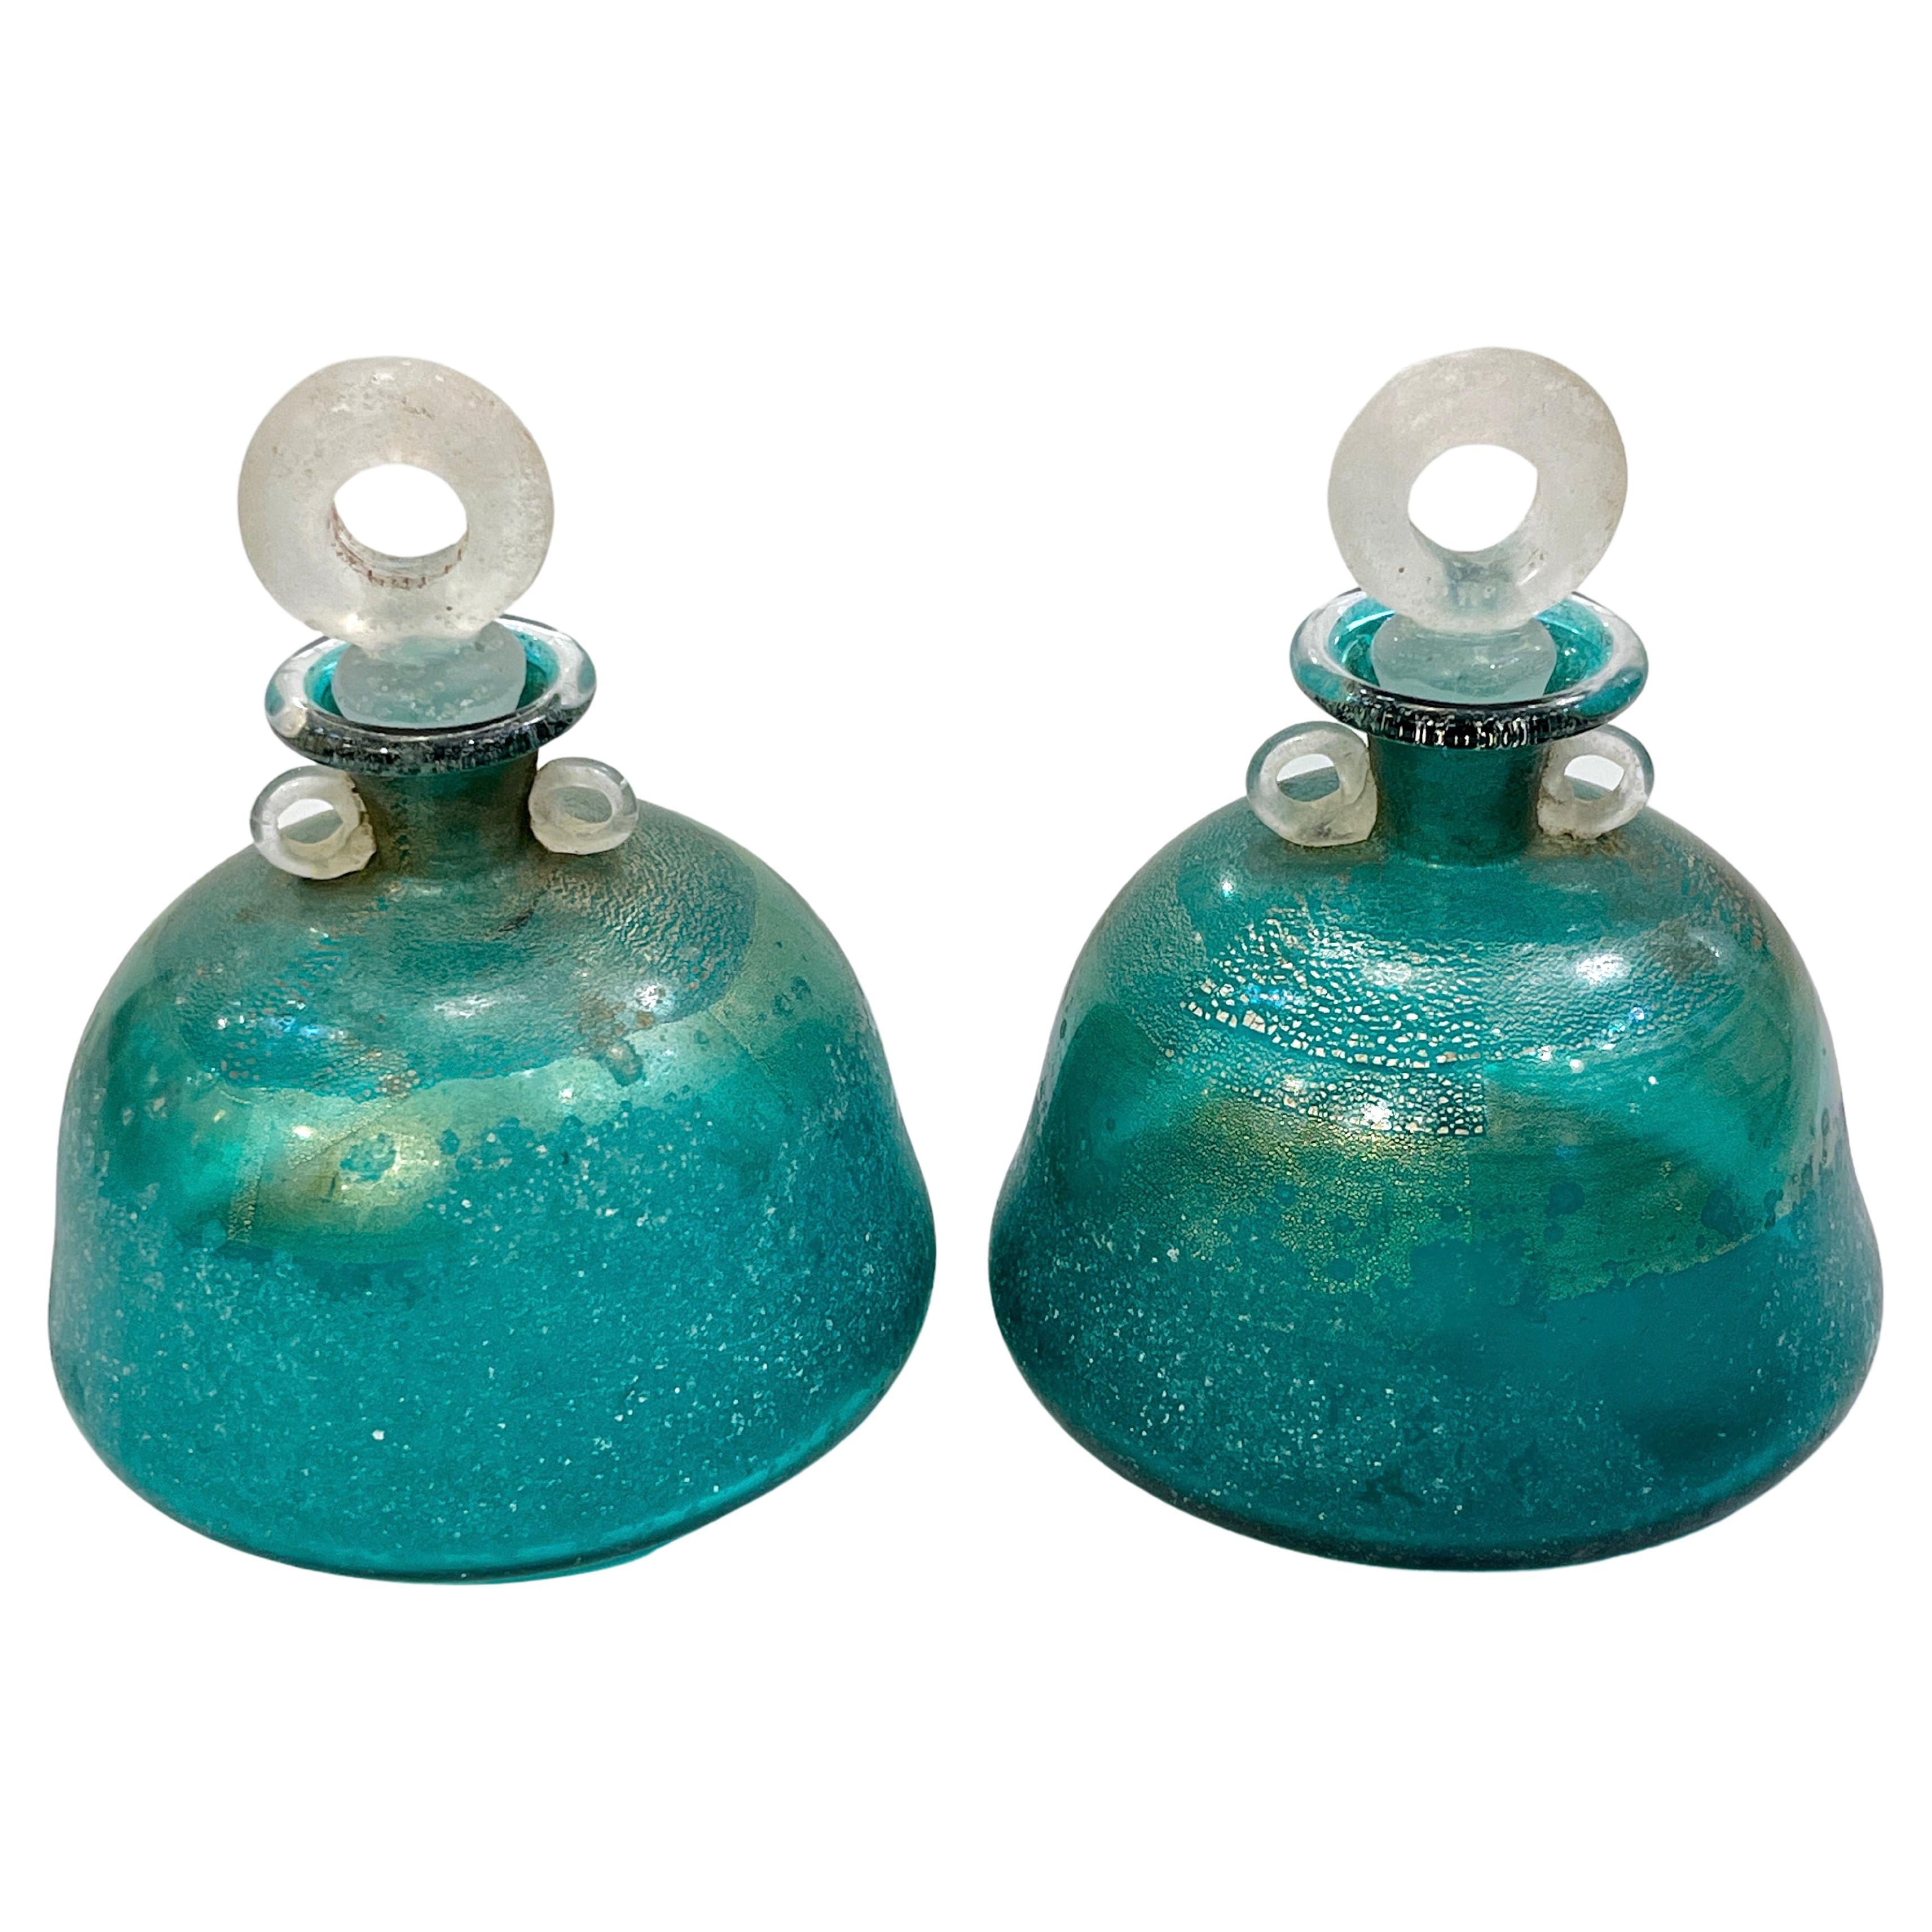 Botellas verdes de cristal de Murano firmadas por Scavo (Italia) de los años 70, con asas y tapones en venta